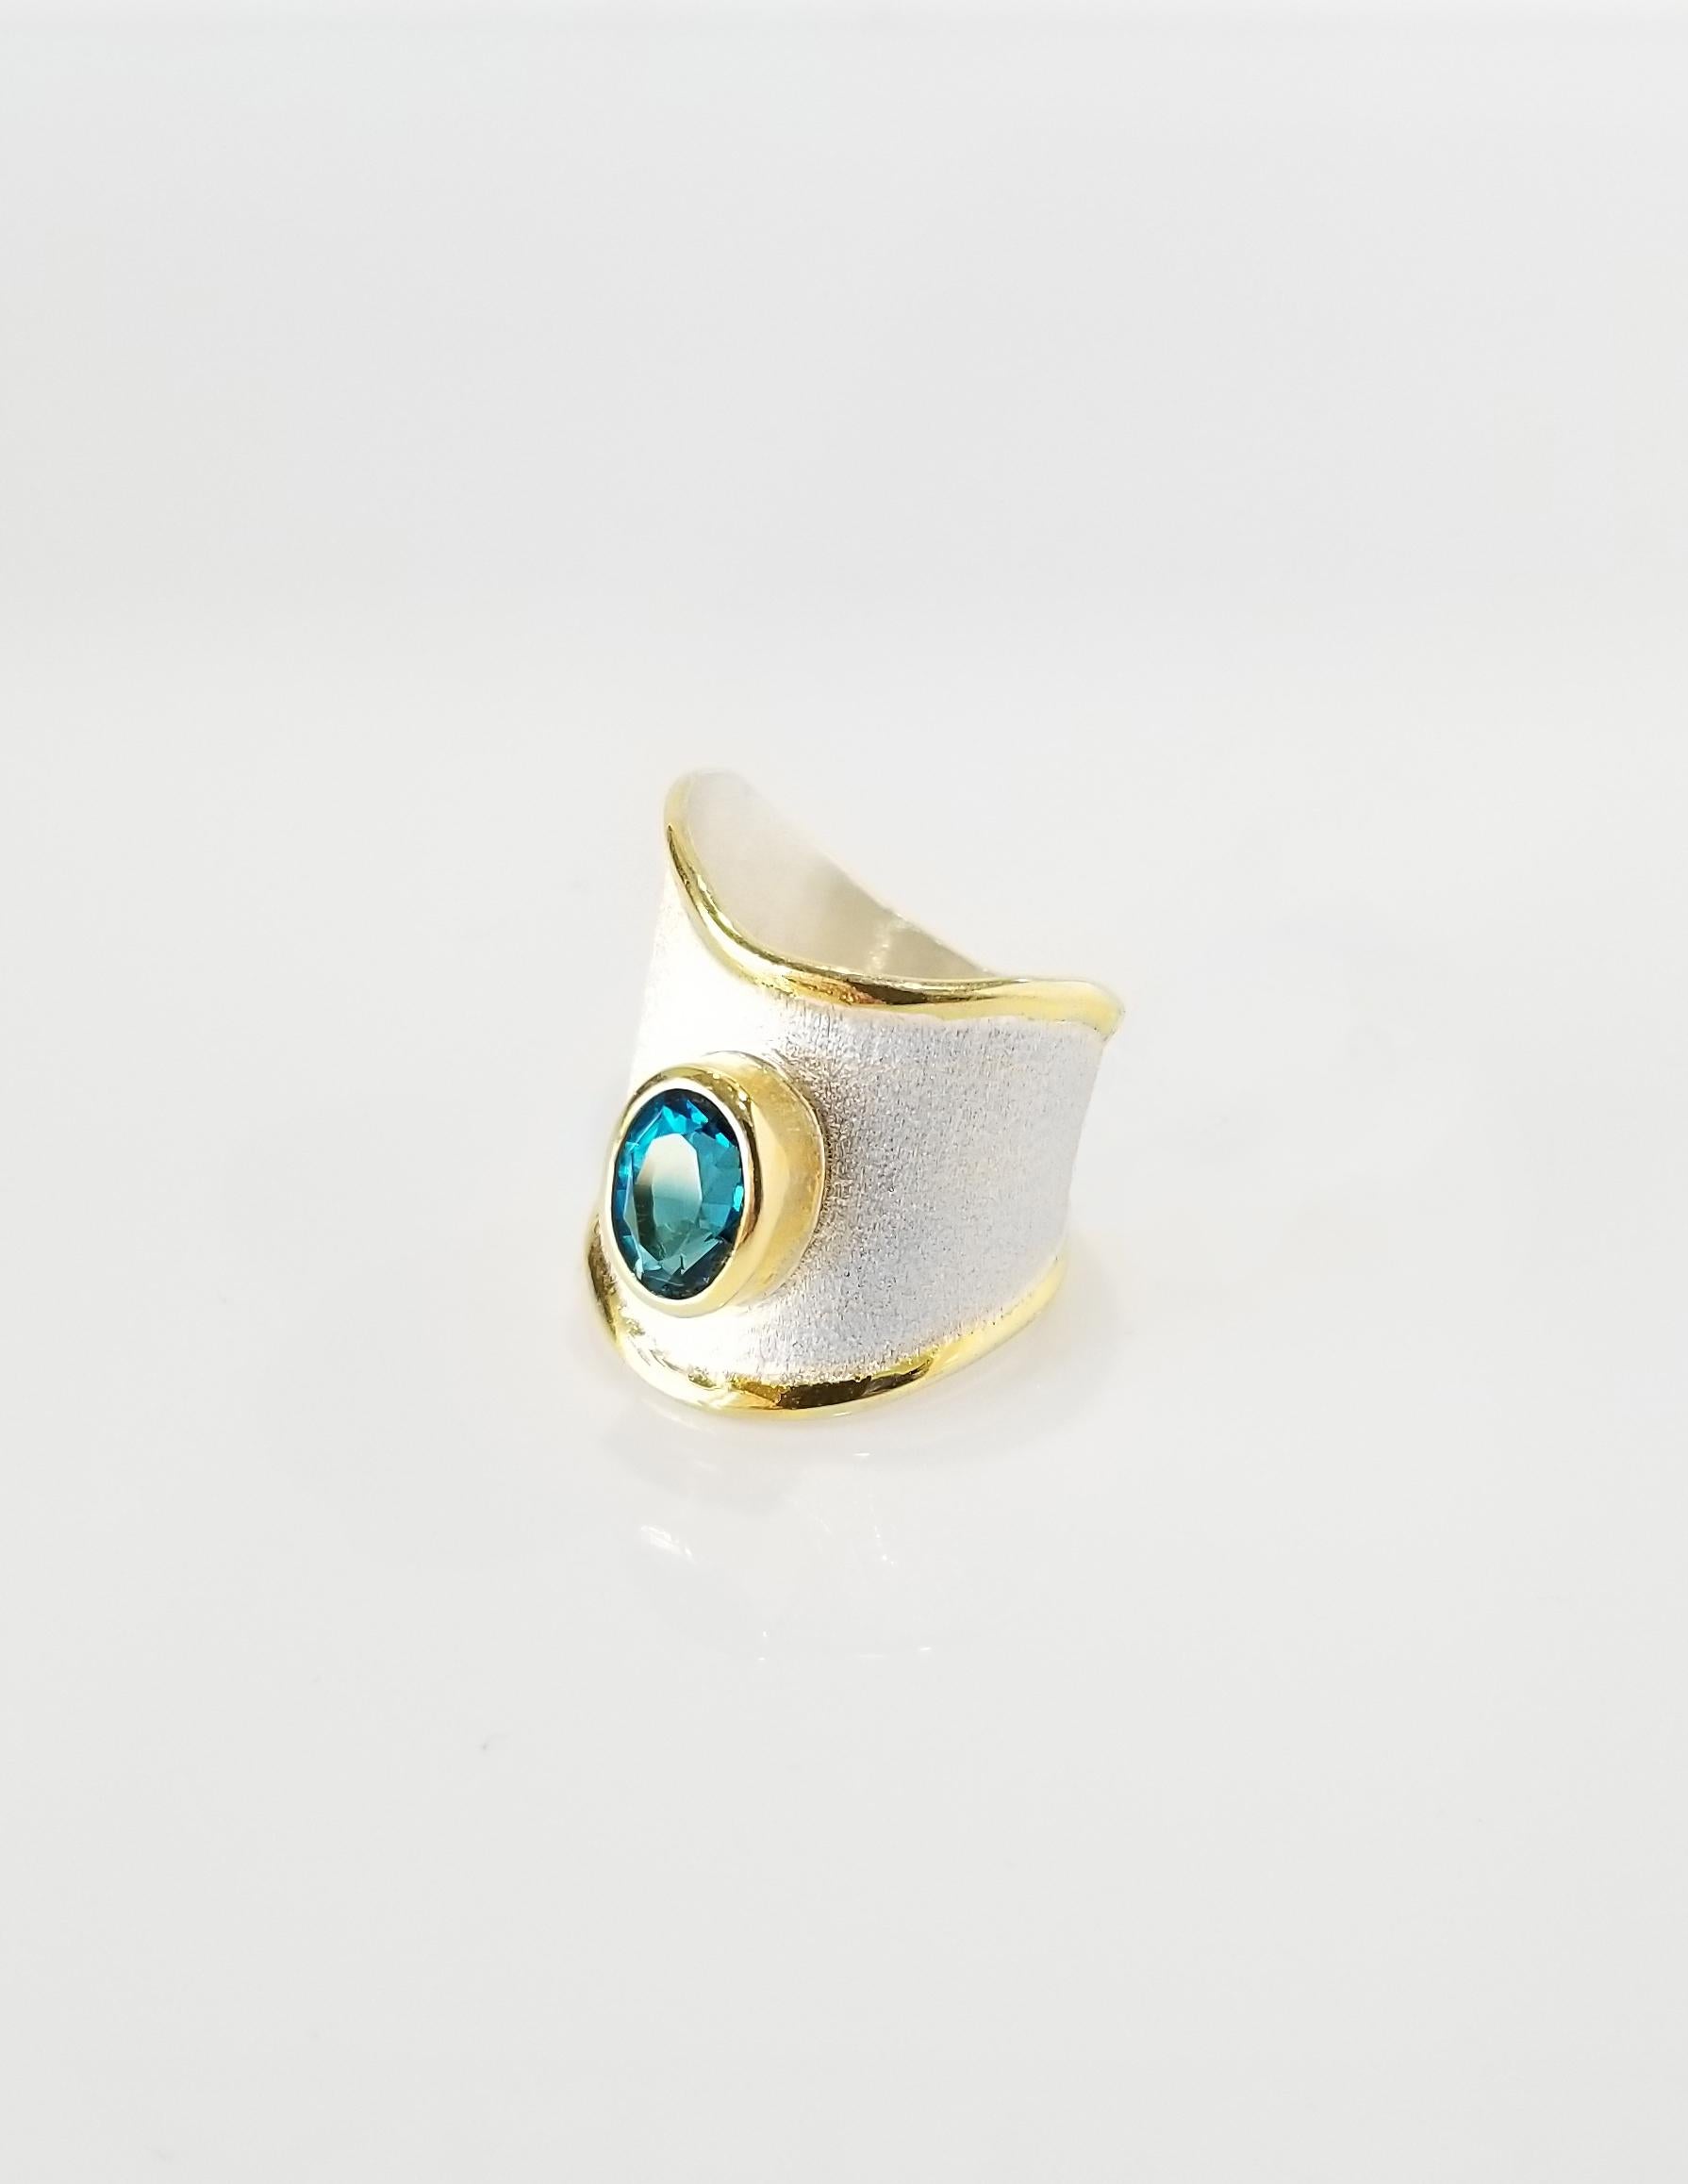 Der handgefertigte Ring der Midas Collection'S von Yianni Creations besteht aus reinem 950er Silber, das mit Palladium überzogen ist, um den Elementen zu widerstehen. Die flüssigen Ränder sind mit 24-karätigem Gelbgold überzogen und kontrastieren